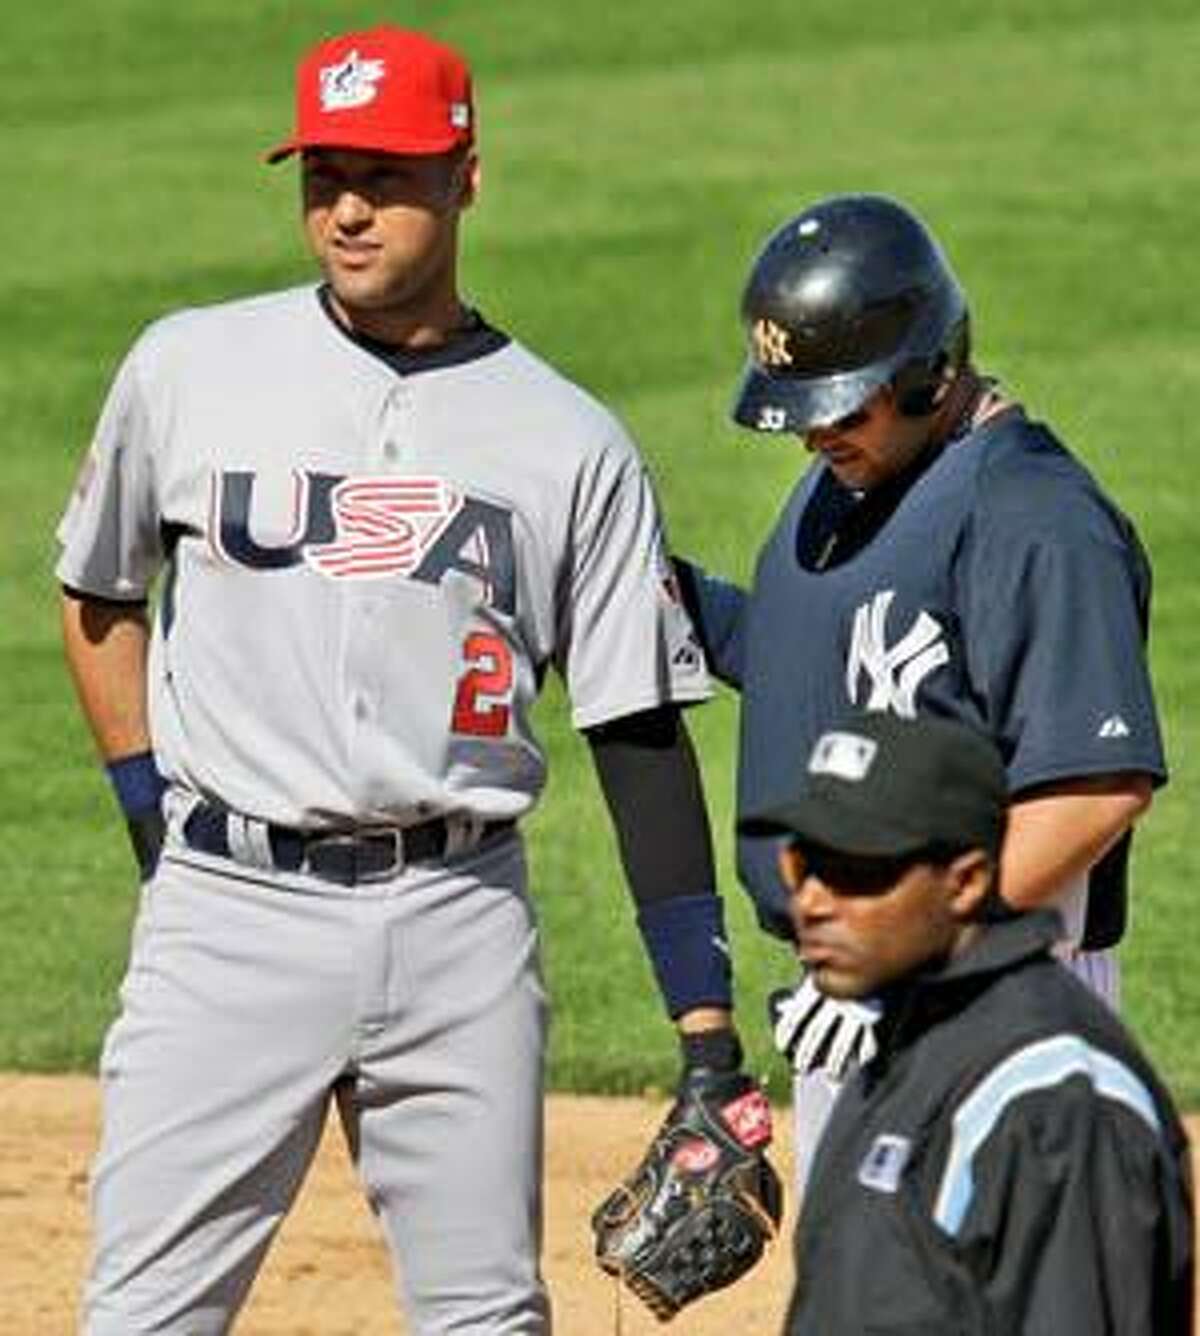 Yankees to wear Derek Jeter patch - 6abc Philadelphia